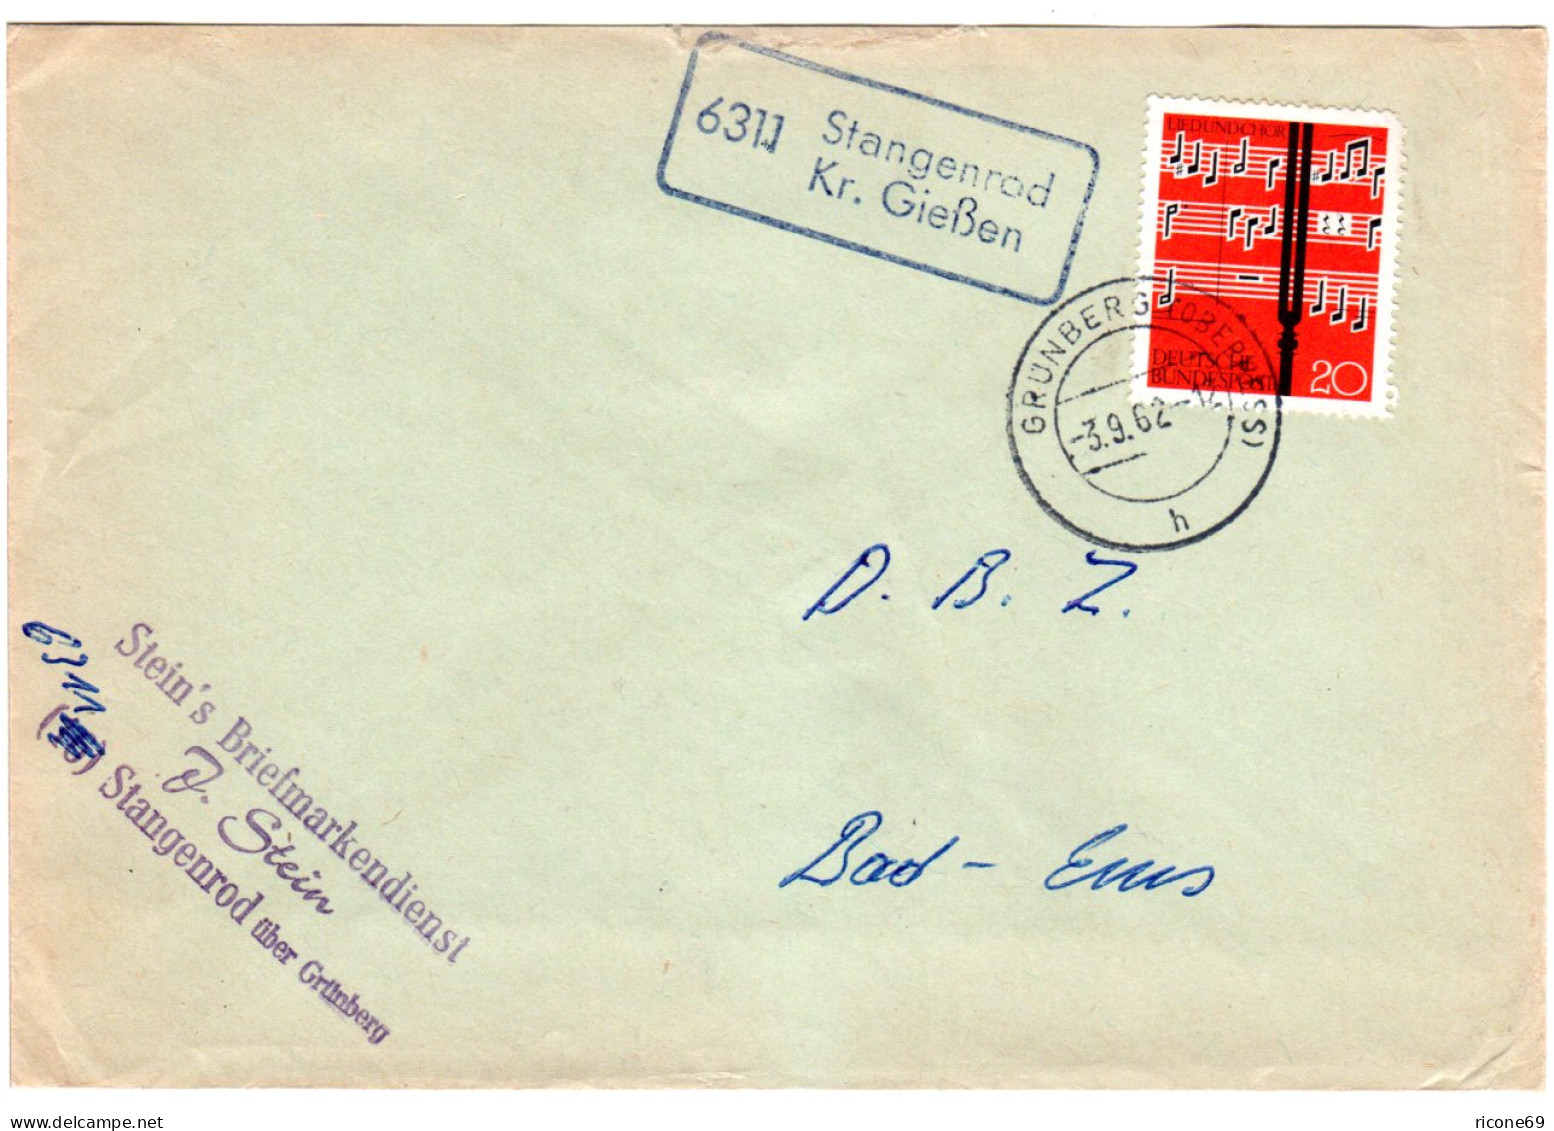 BRD 1962, Landpost Stpl. 6311 STANGENROD Kr. Gießen Auf Brief M. 20 Pf.  - Collections